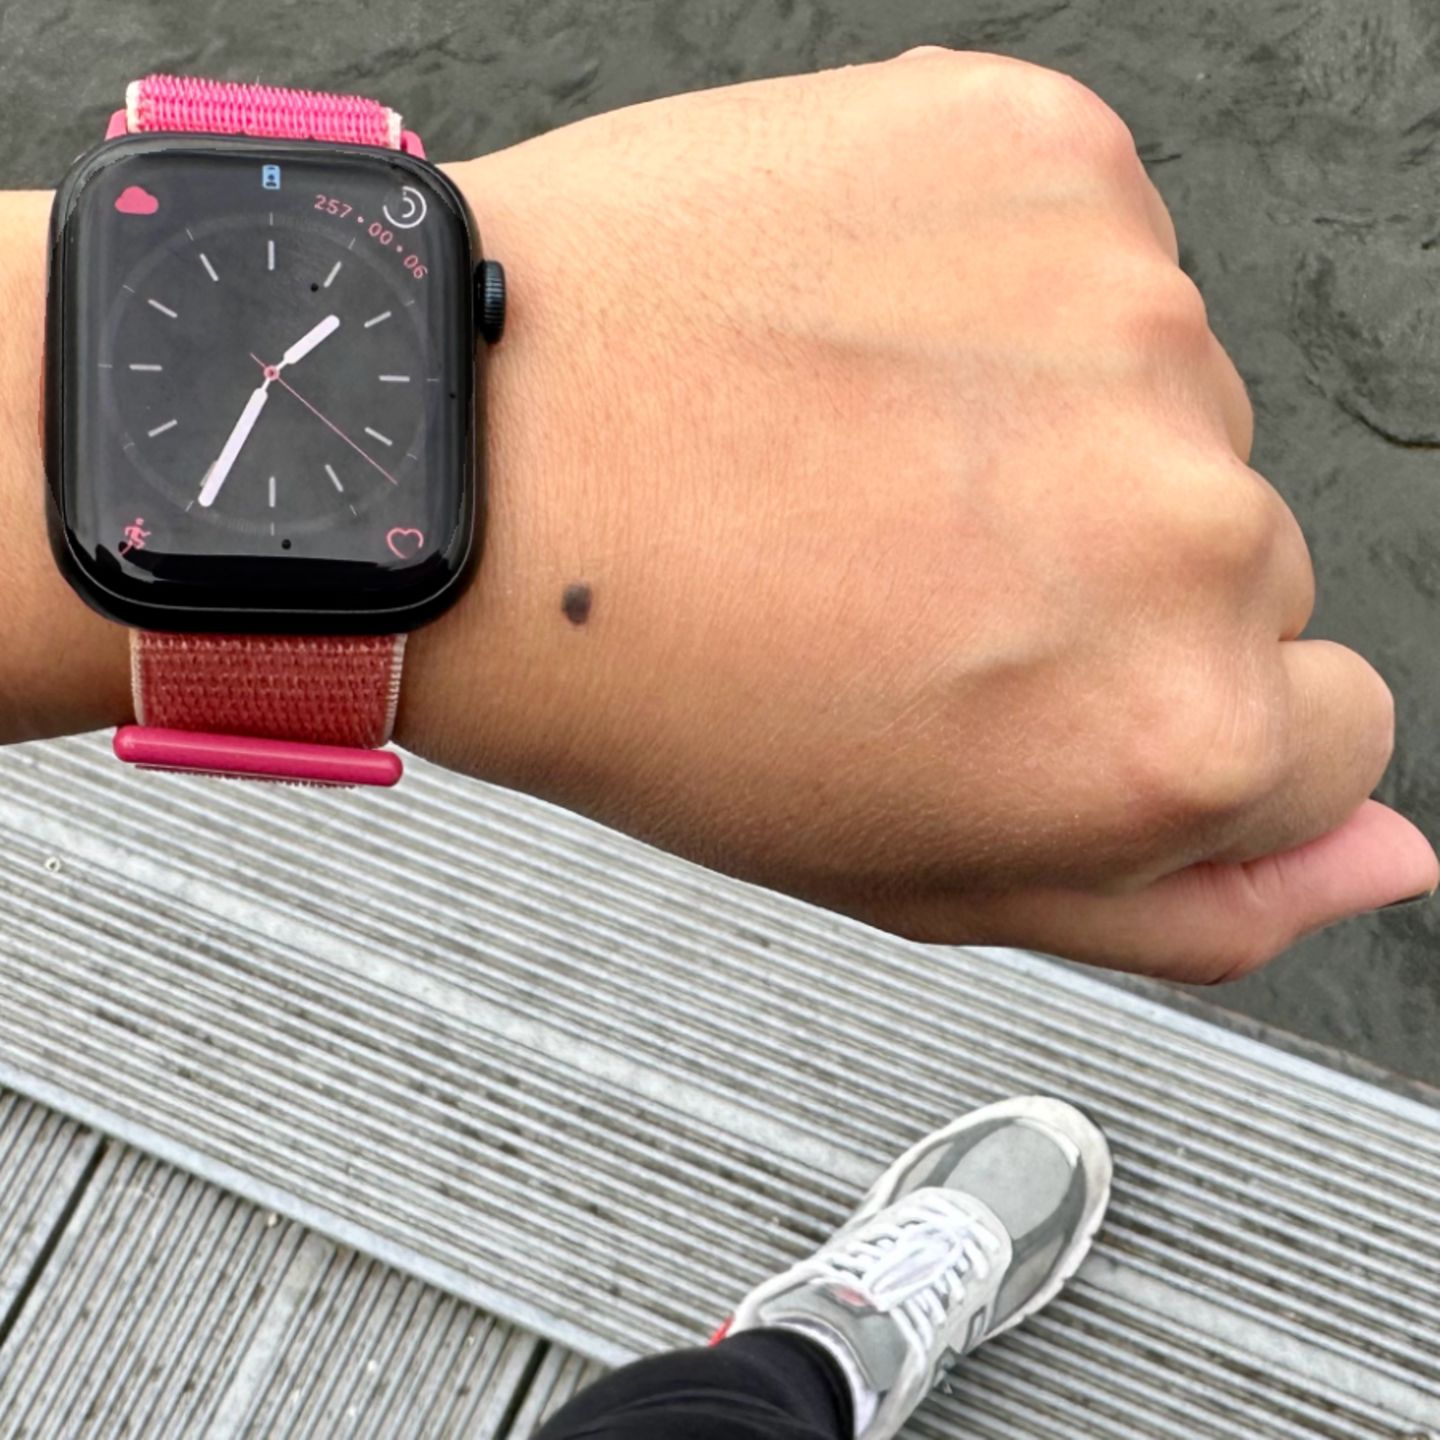 Warentest prüft Smartwatches Auch ohne Ultra hängt die Apple Watch alle ab STERN.de